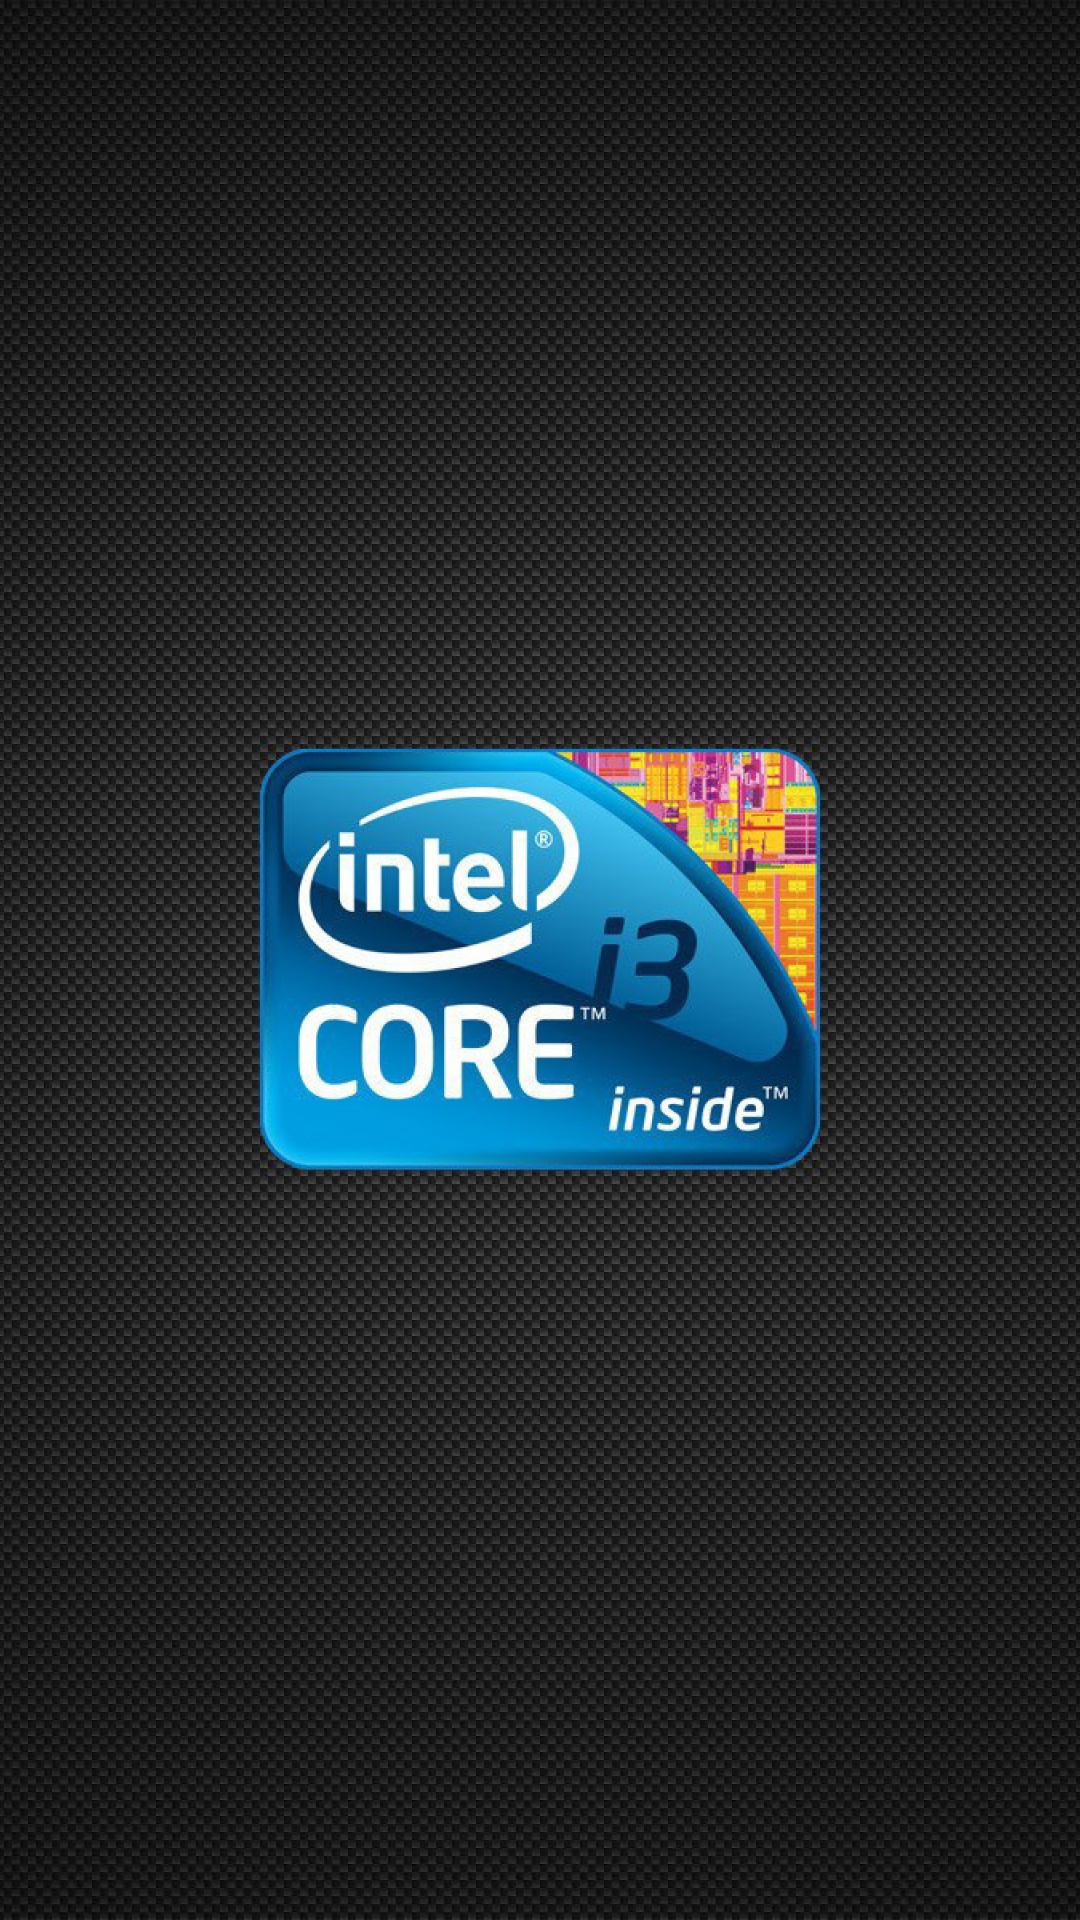 Intel Core i3 Processor wallpaper 1080x1920